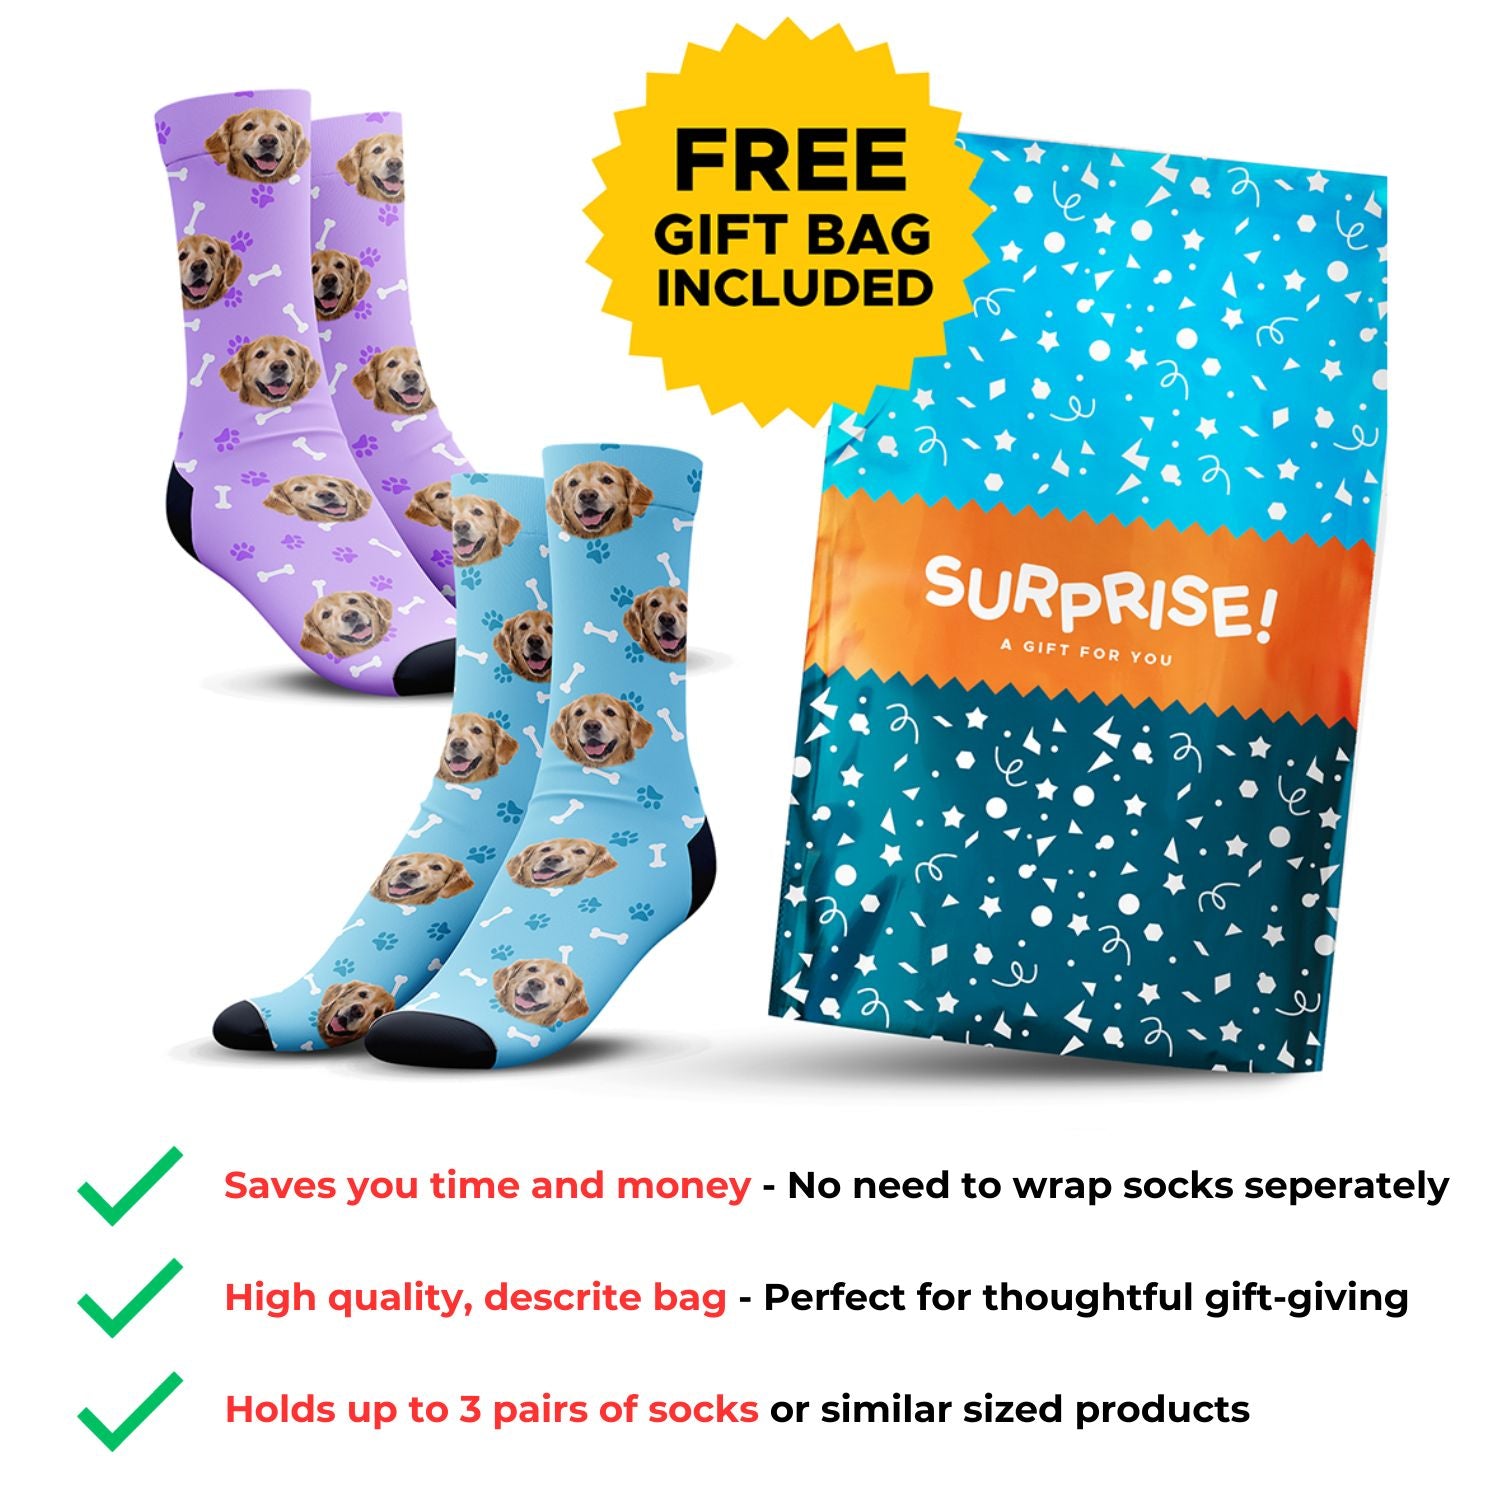 Custom Snowman Socks - 100% Free, Limit 1 Per Customer